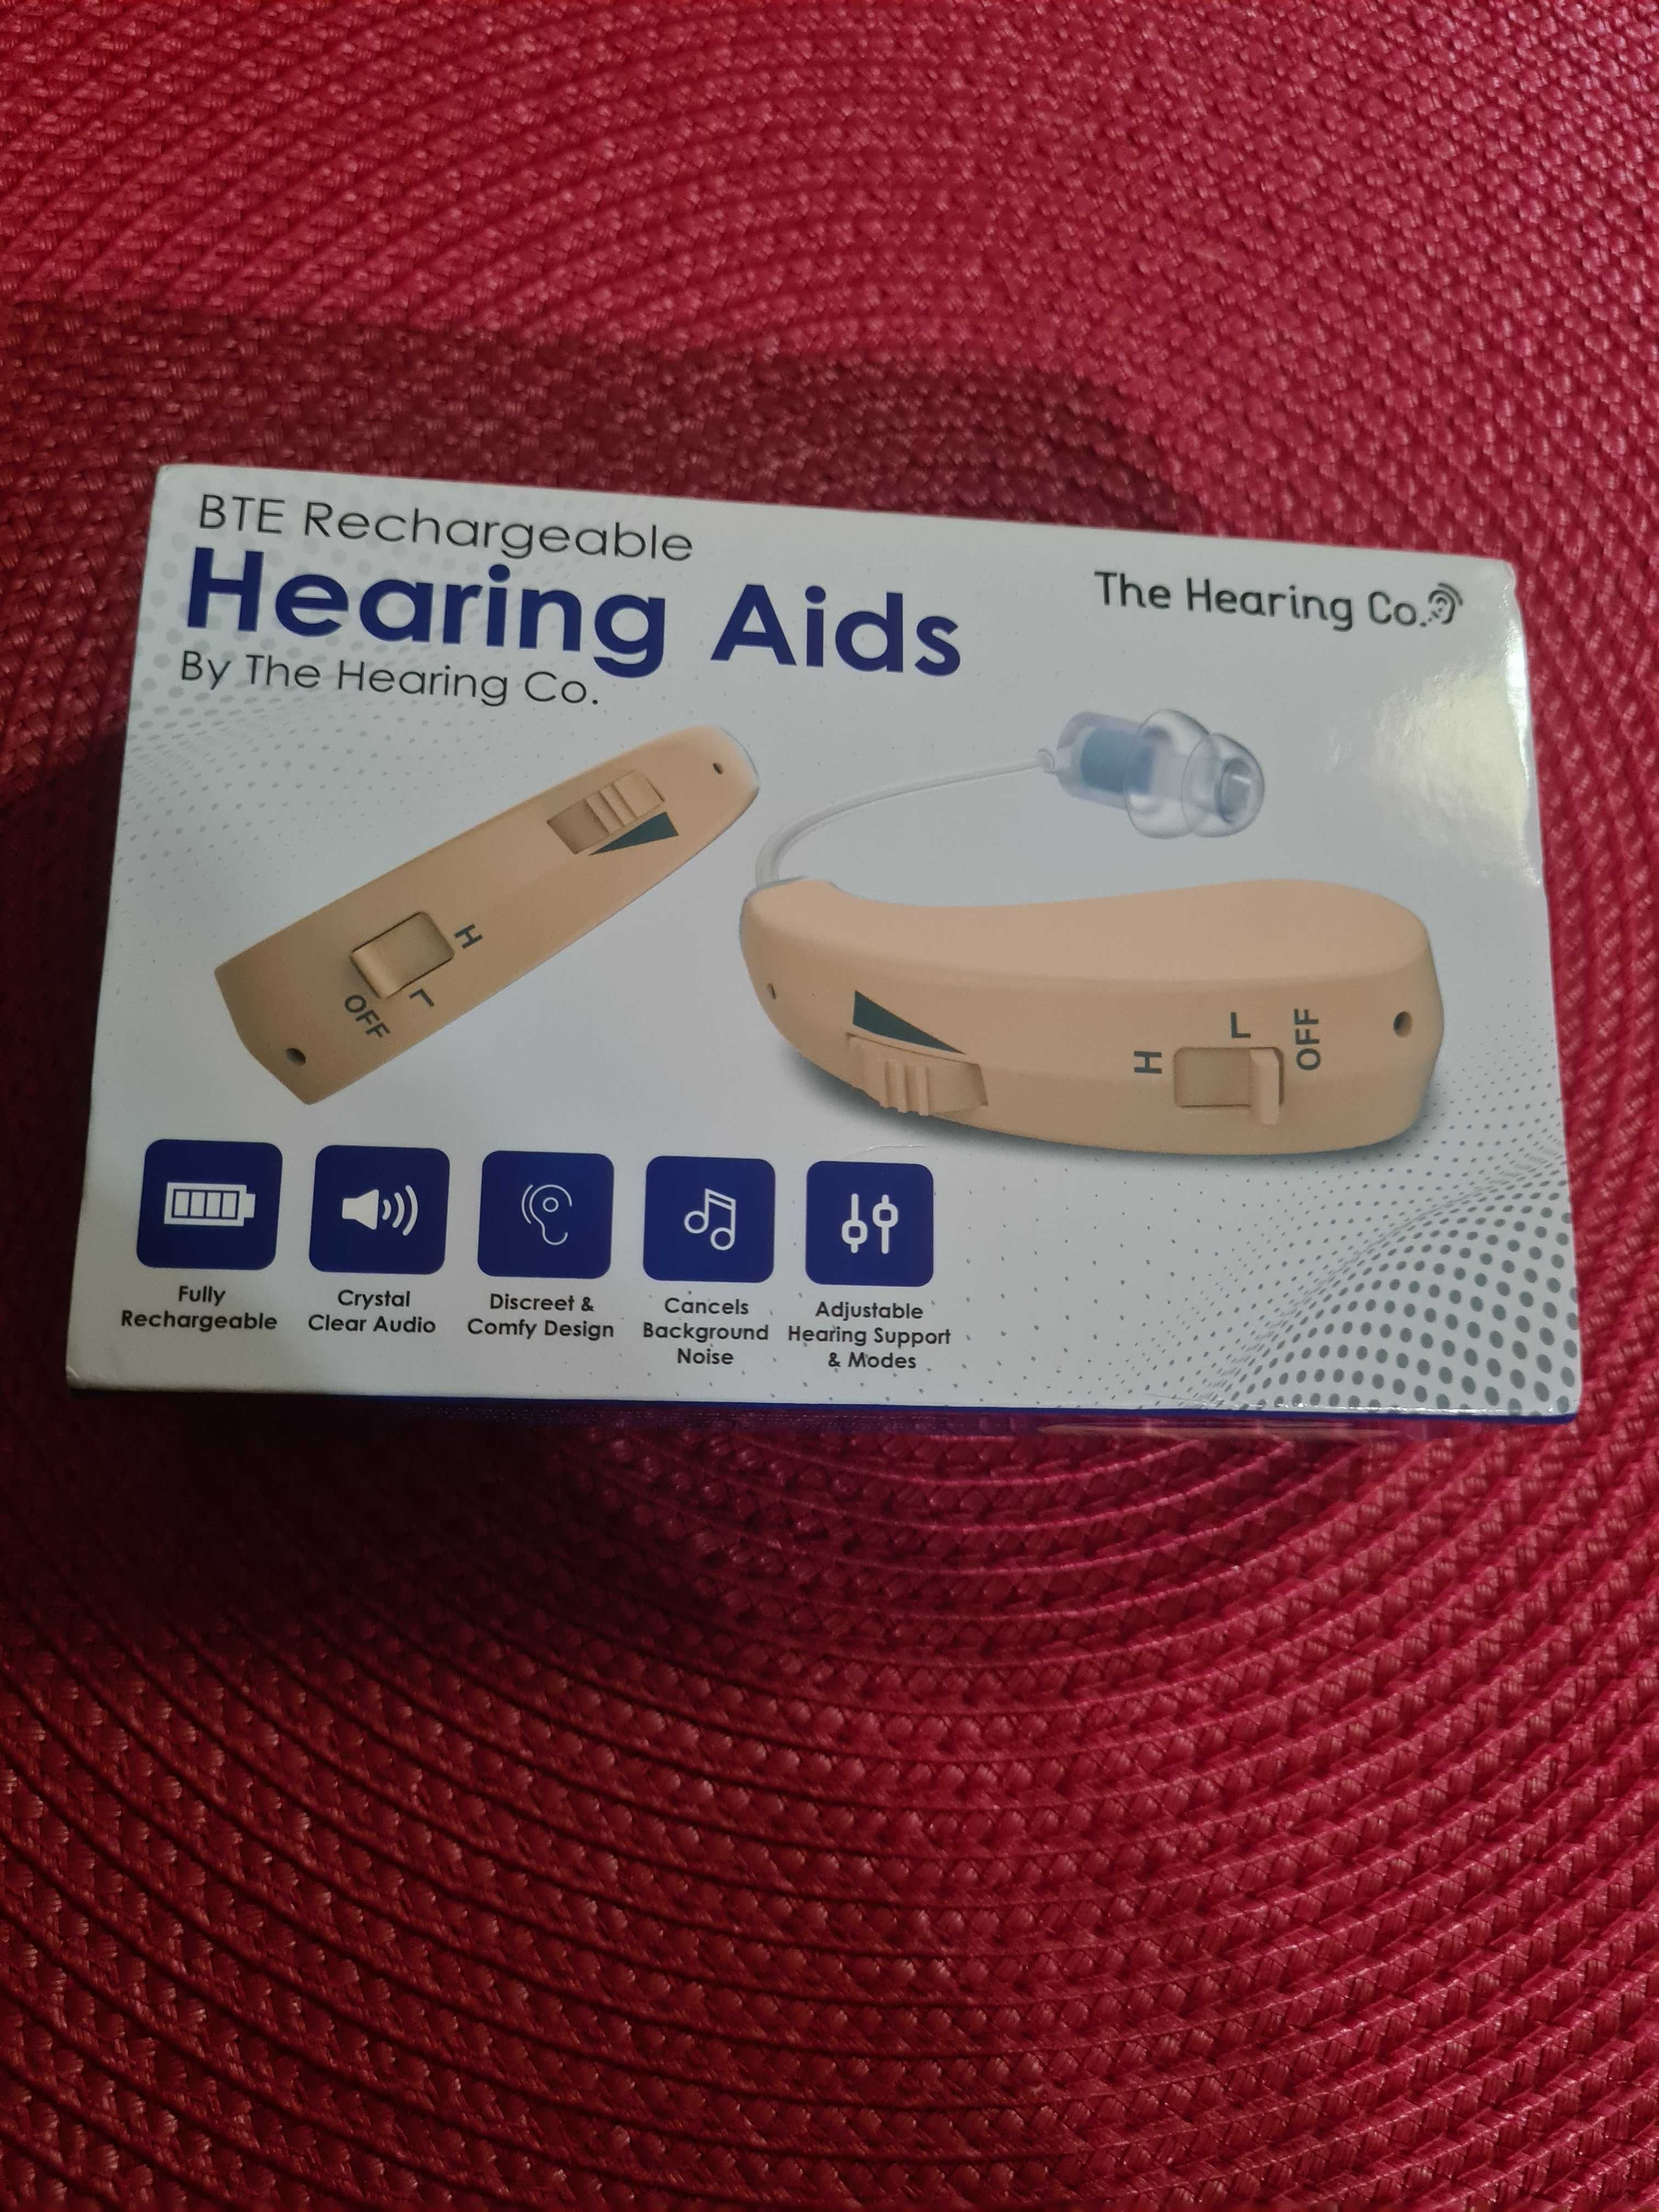 Чисто нови слухови апаратчета в ухото или зад ухото. The Hearing Co.